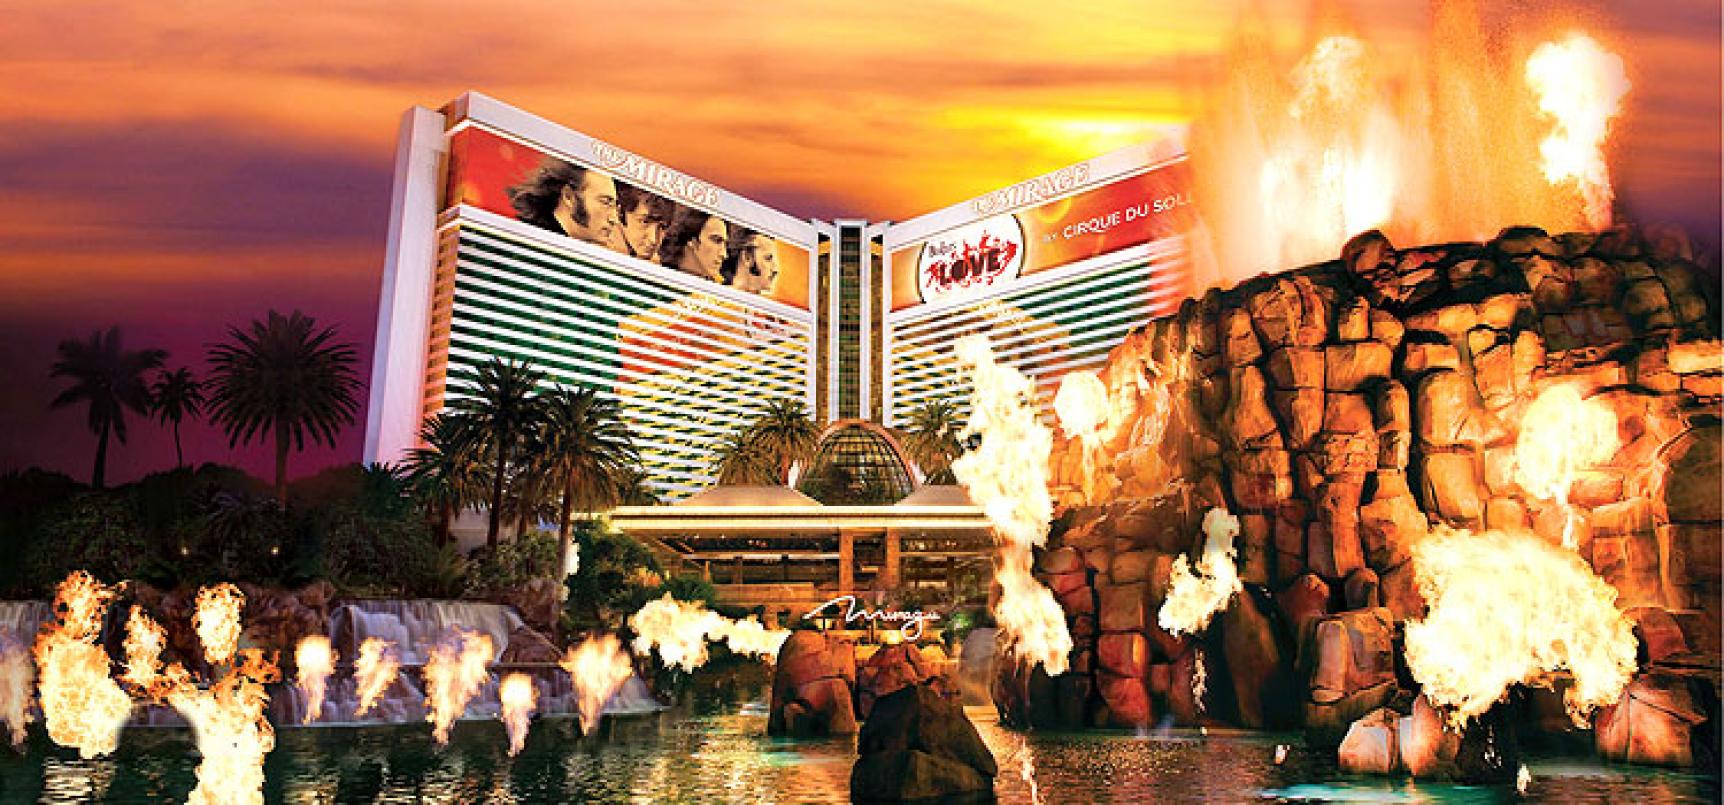 mirage hotel casino in las vegas